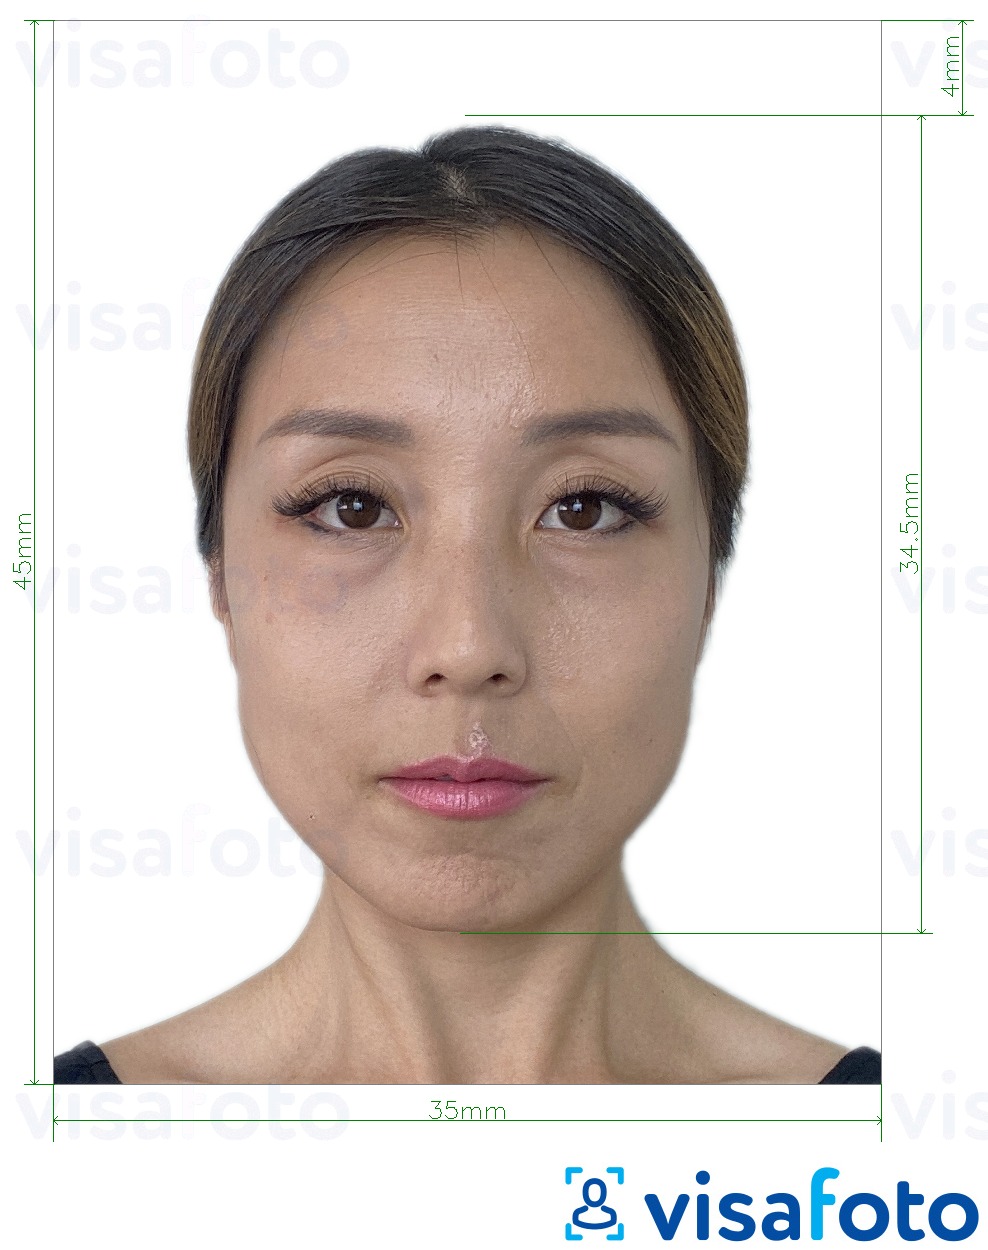 Exemplo de foto para Bilhete de identidade residente de Macau (BIR) 45x35 mm com especificação exata de dimensão